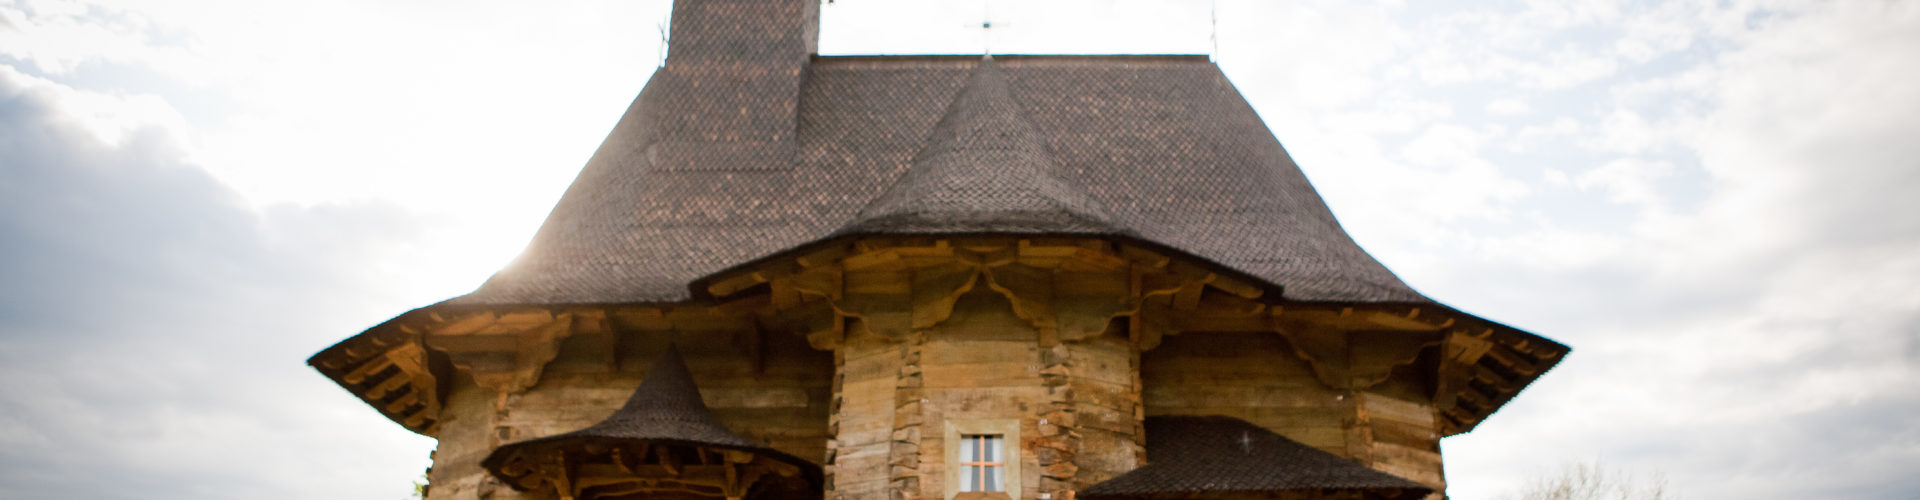 Biserica de lemn din Chișinău – o bijuterie arhitecturală valorificată insuficient?